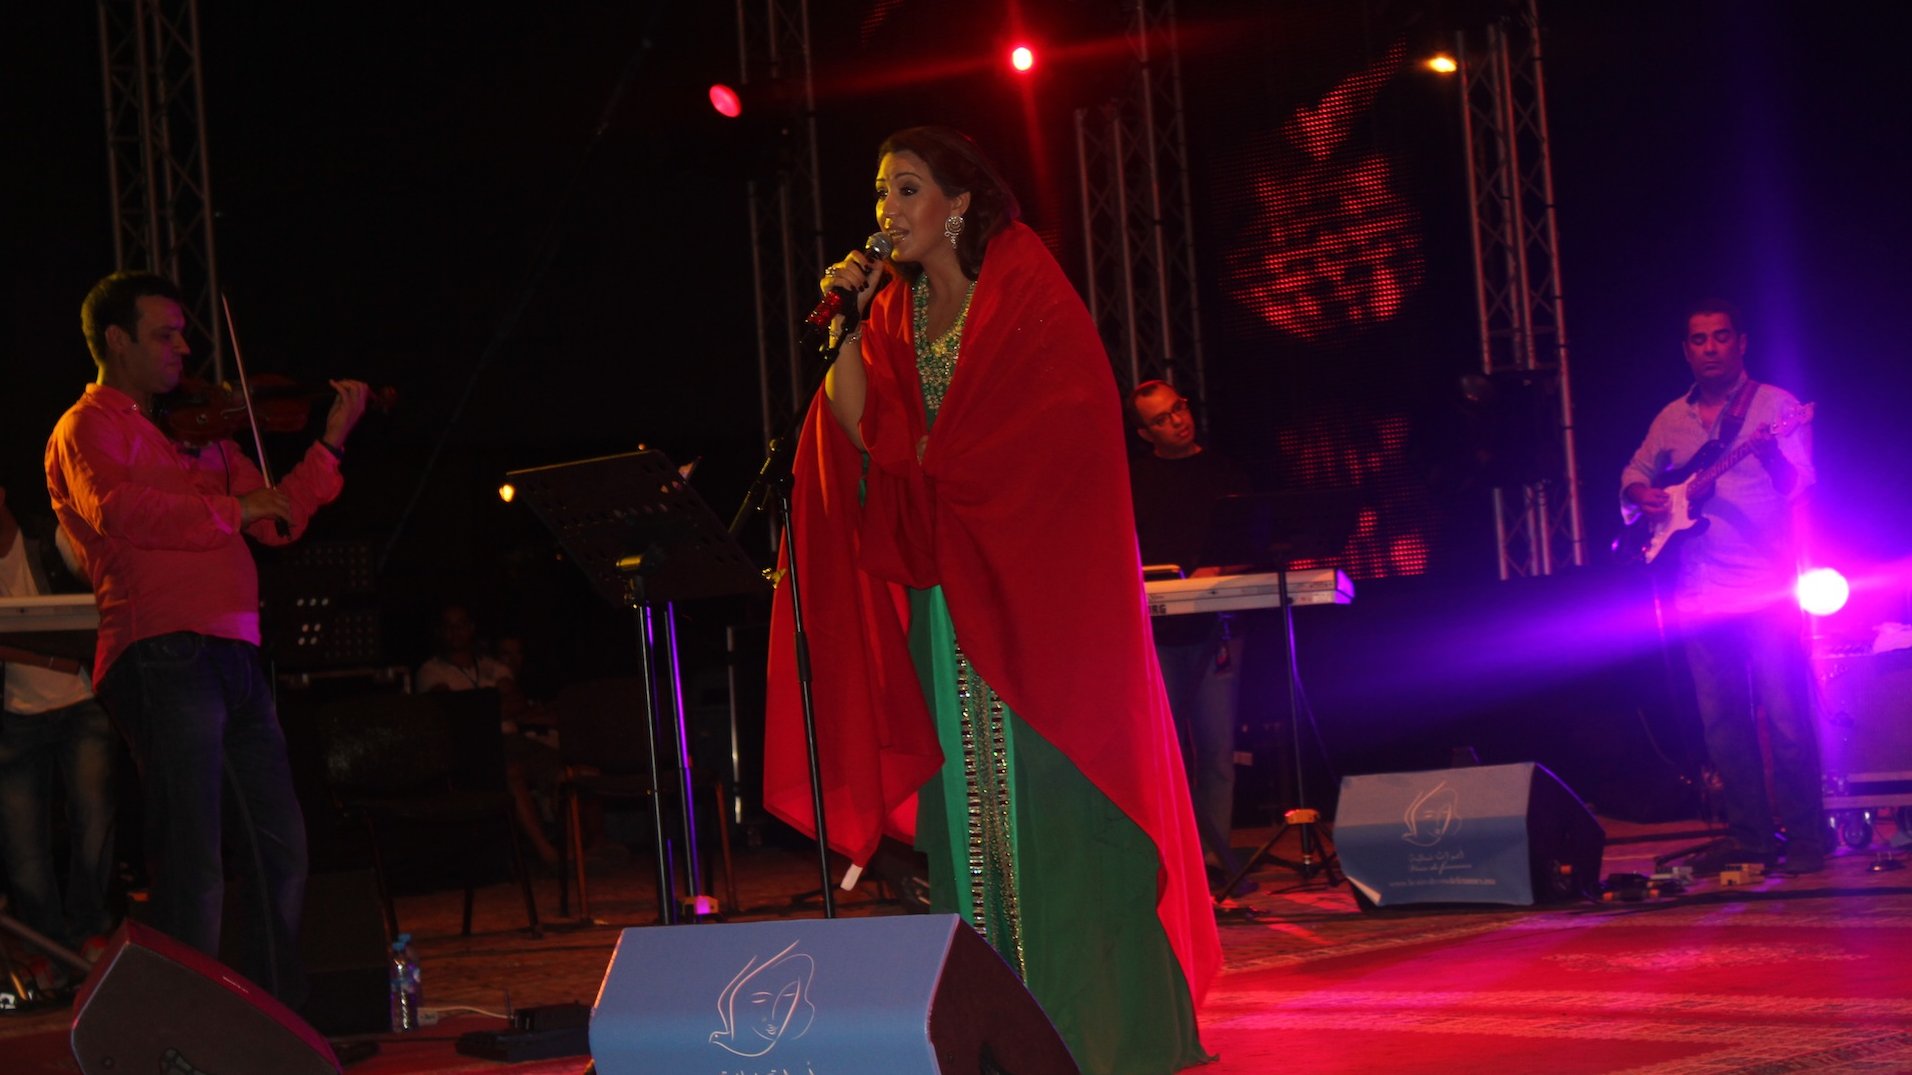 أسماء منور أثناء أداء أغنية  "جونيمار" وتلحفها بالعلم المغربي
